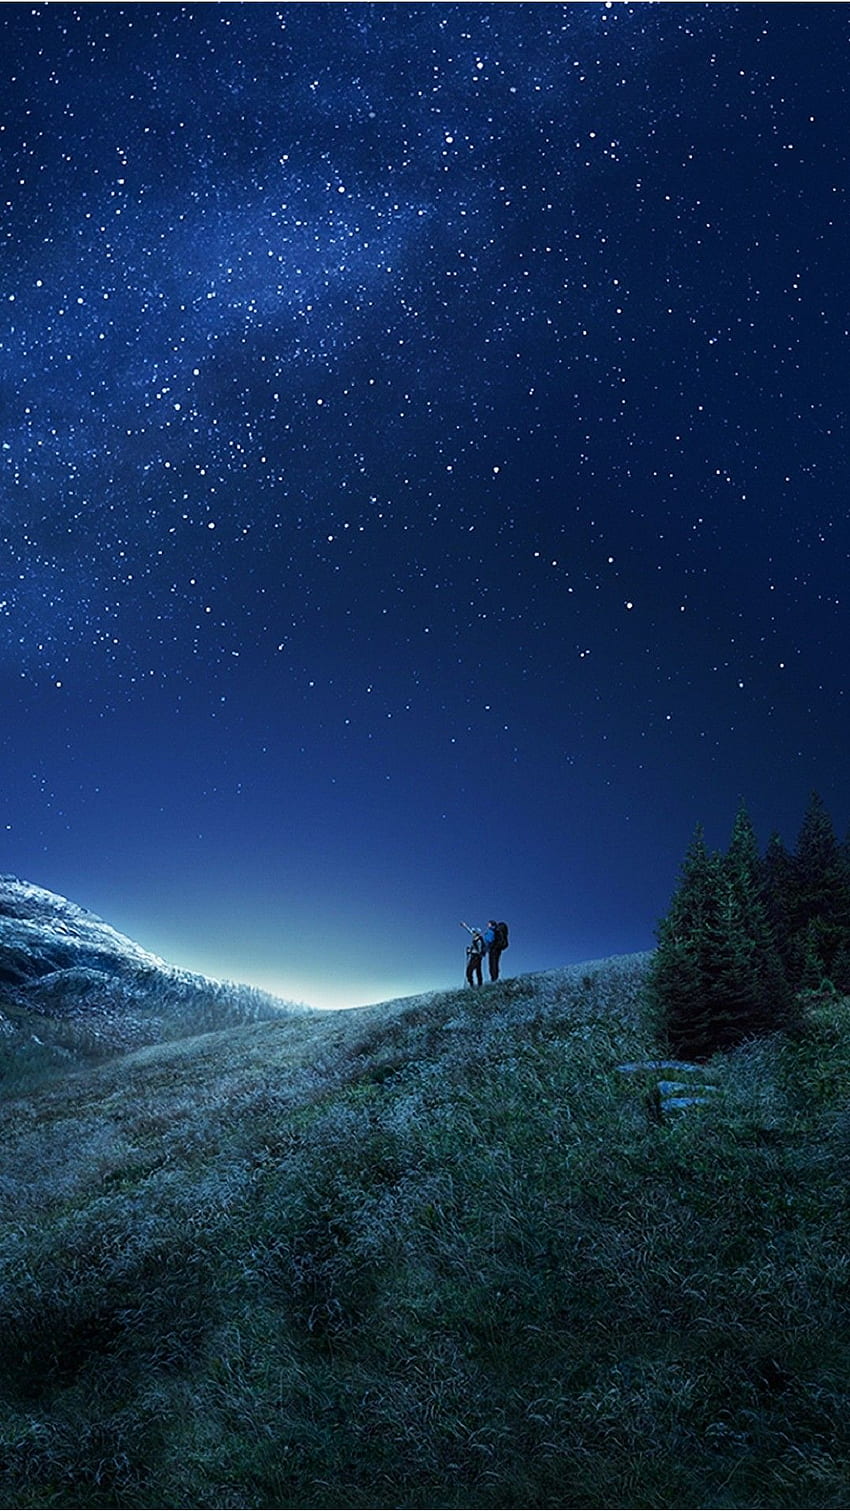 Samsung galaxy s8 rozgwieżdżone nocne niebo nad wzgórzami — dotknij, aby zobaczyć więcej Tapeta na telefon HD